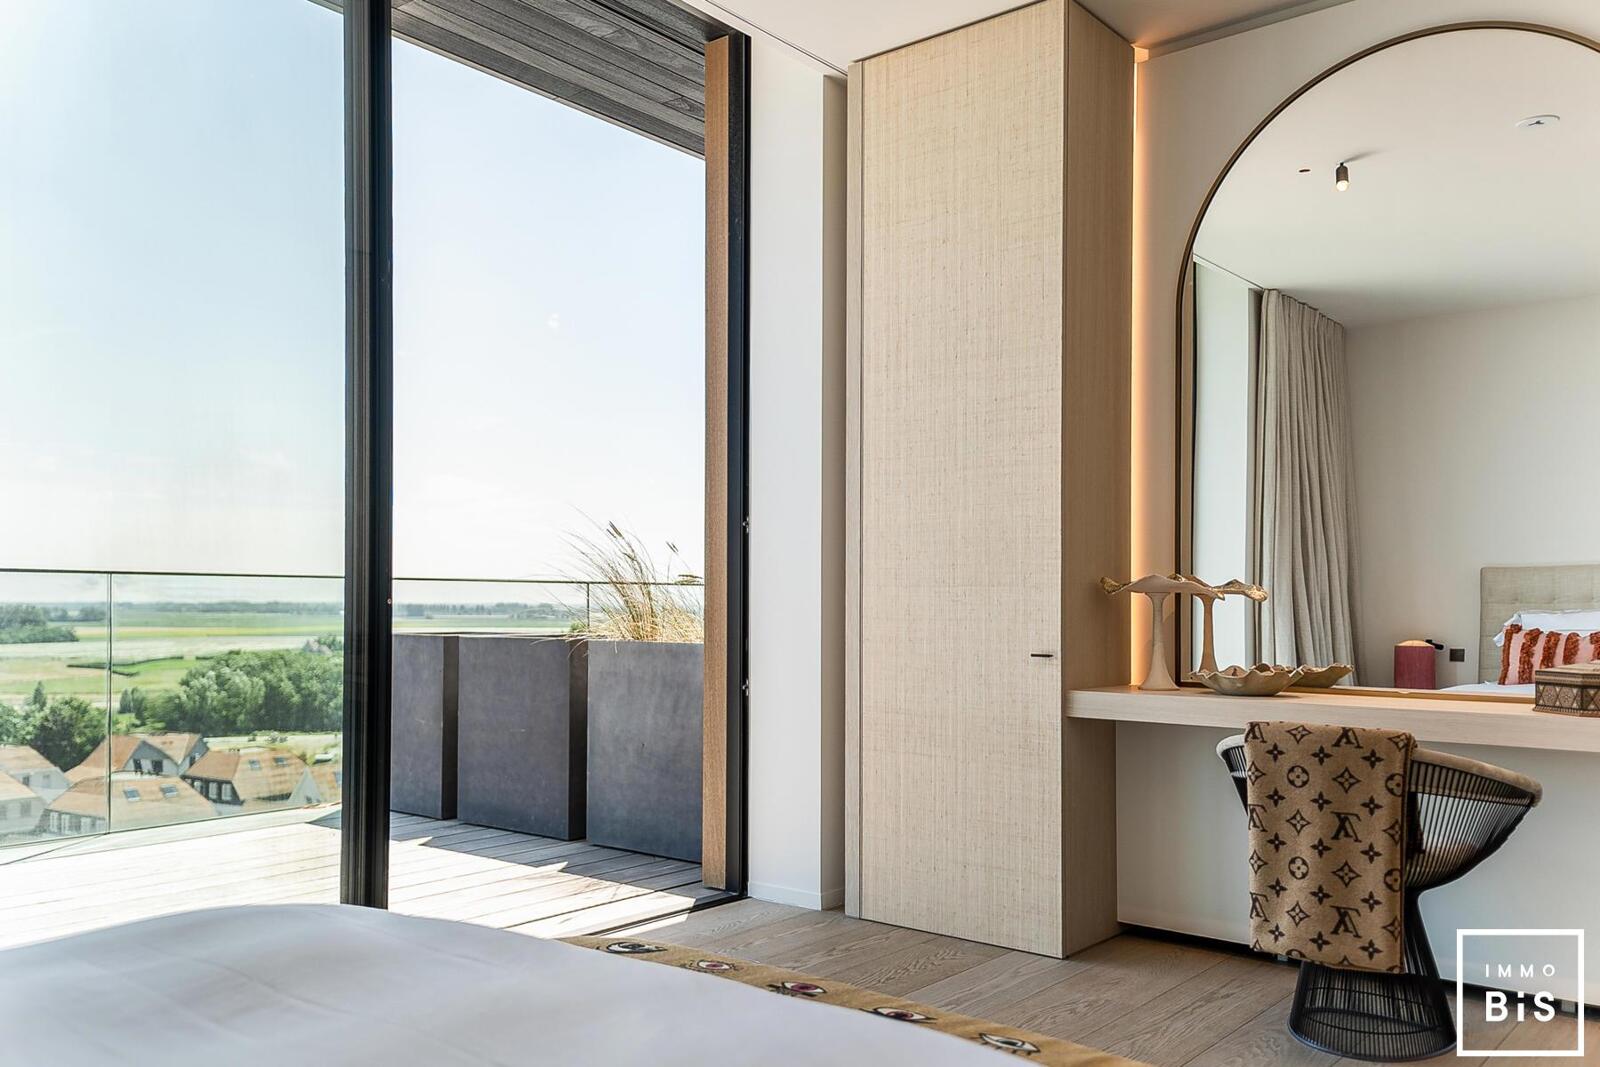 Luxe penthouse met zeezicht, terras en garage in Cadzand - Residentie Blanke Top 12